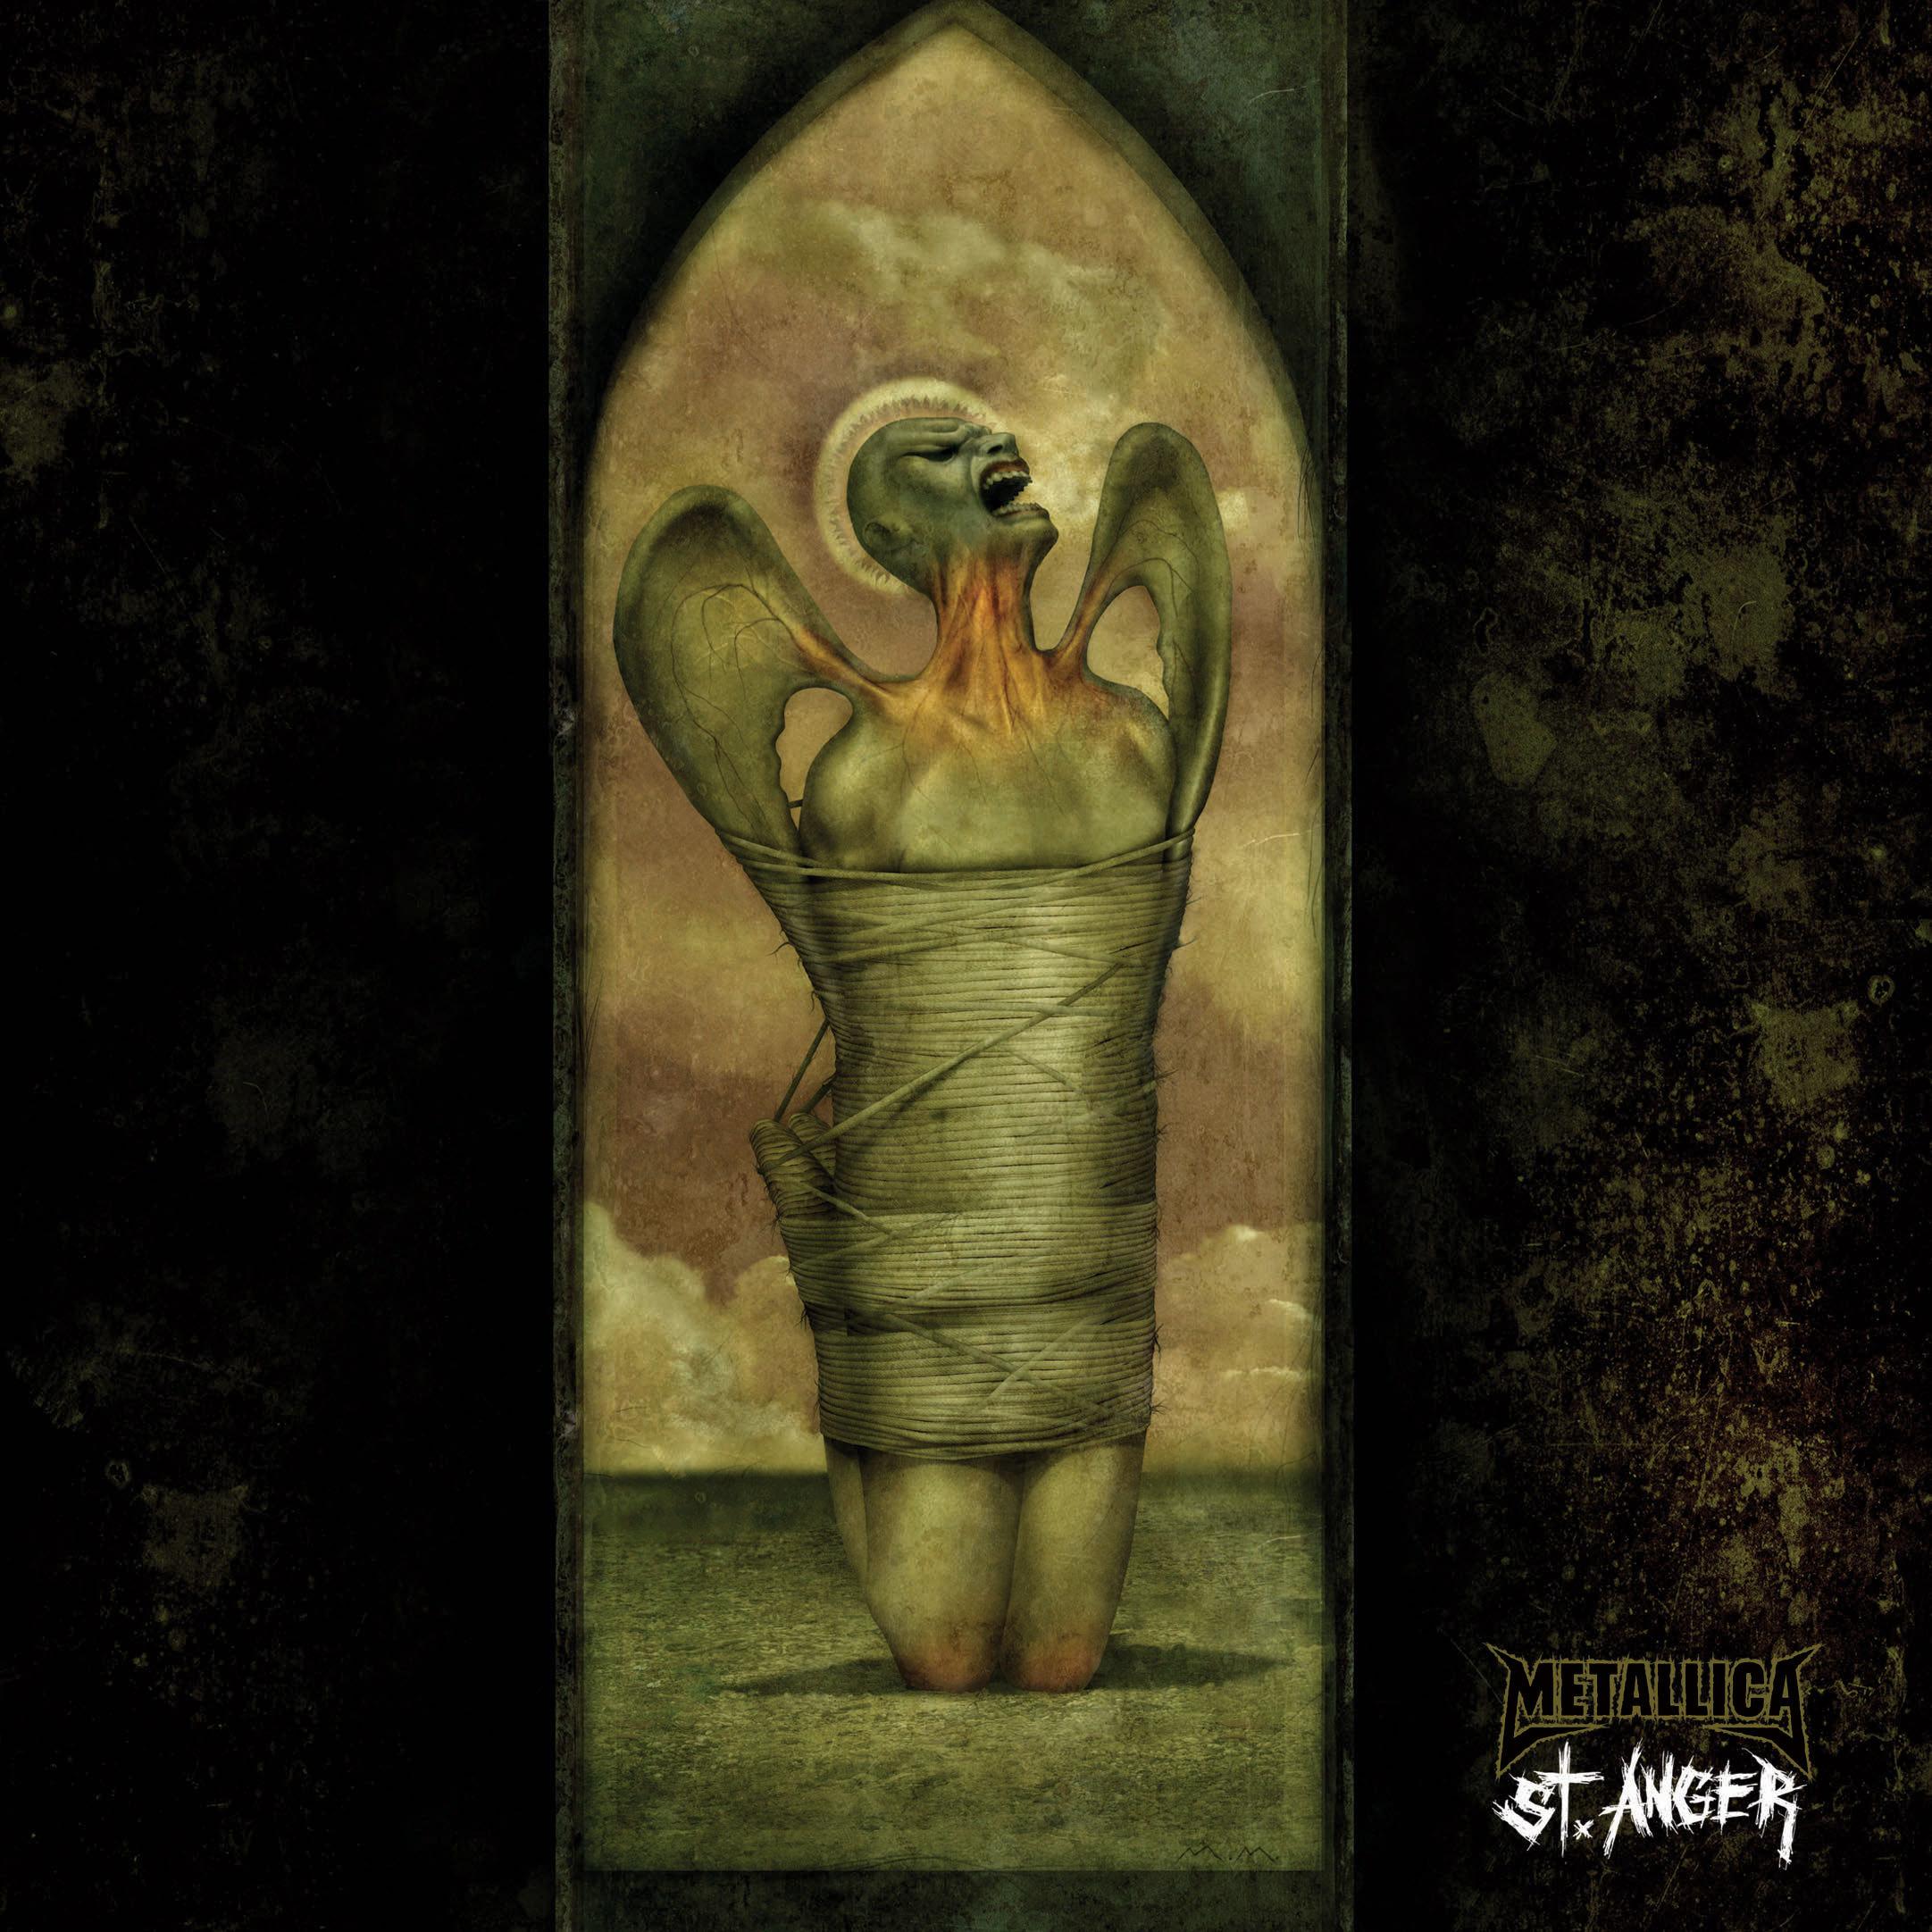 St. Anger Album Cover